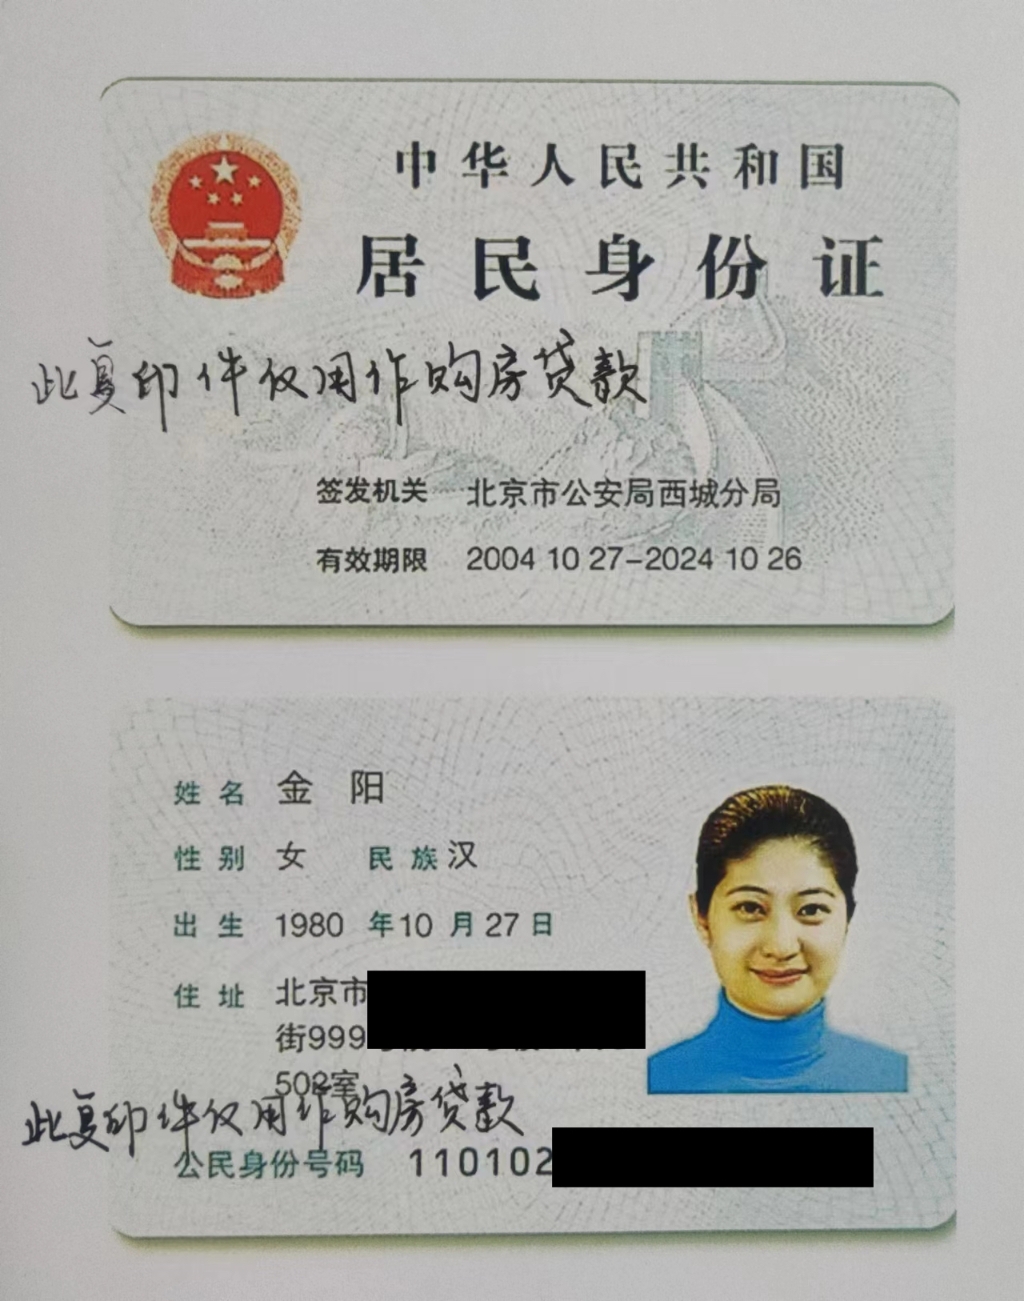 使用身份证复印件最好写上用途 重庆警方将集中打击涉身份证违法犯罪